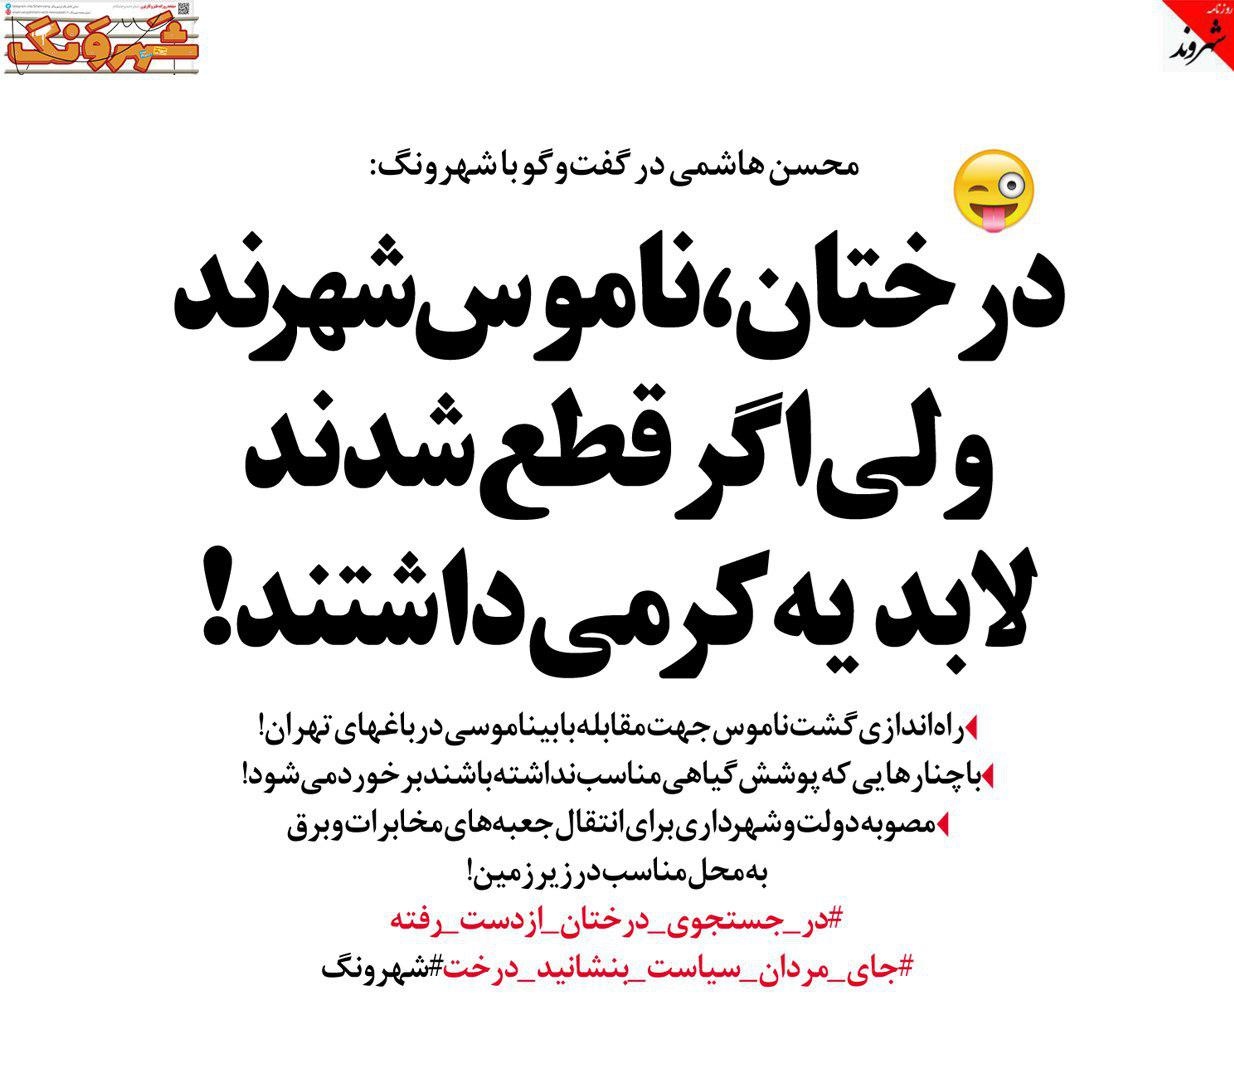 گشت ناموس در تهران راه اندازی می شود + عکس